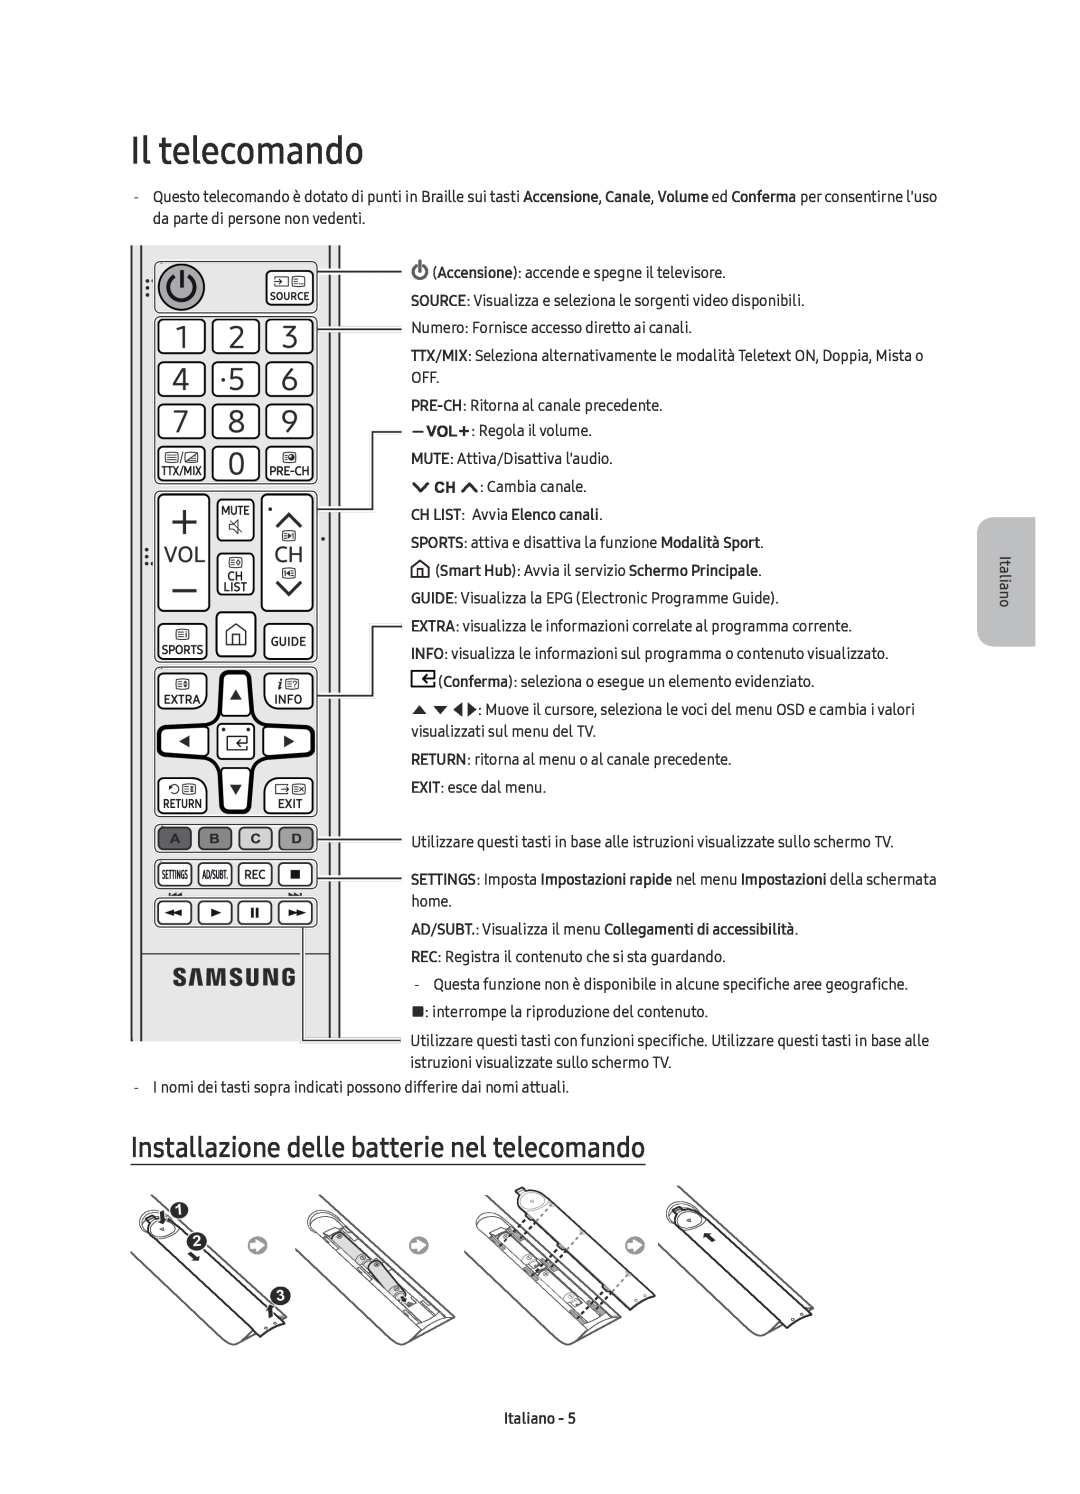 Samsung UE43KU6079UXZG Il telecomando, Installazione delle batterie nel telecomando, CH LIST Avvia Elenco canali, Italiano 